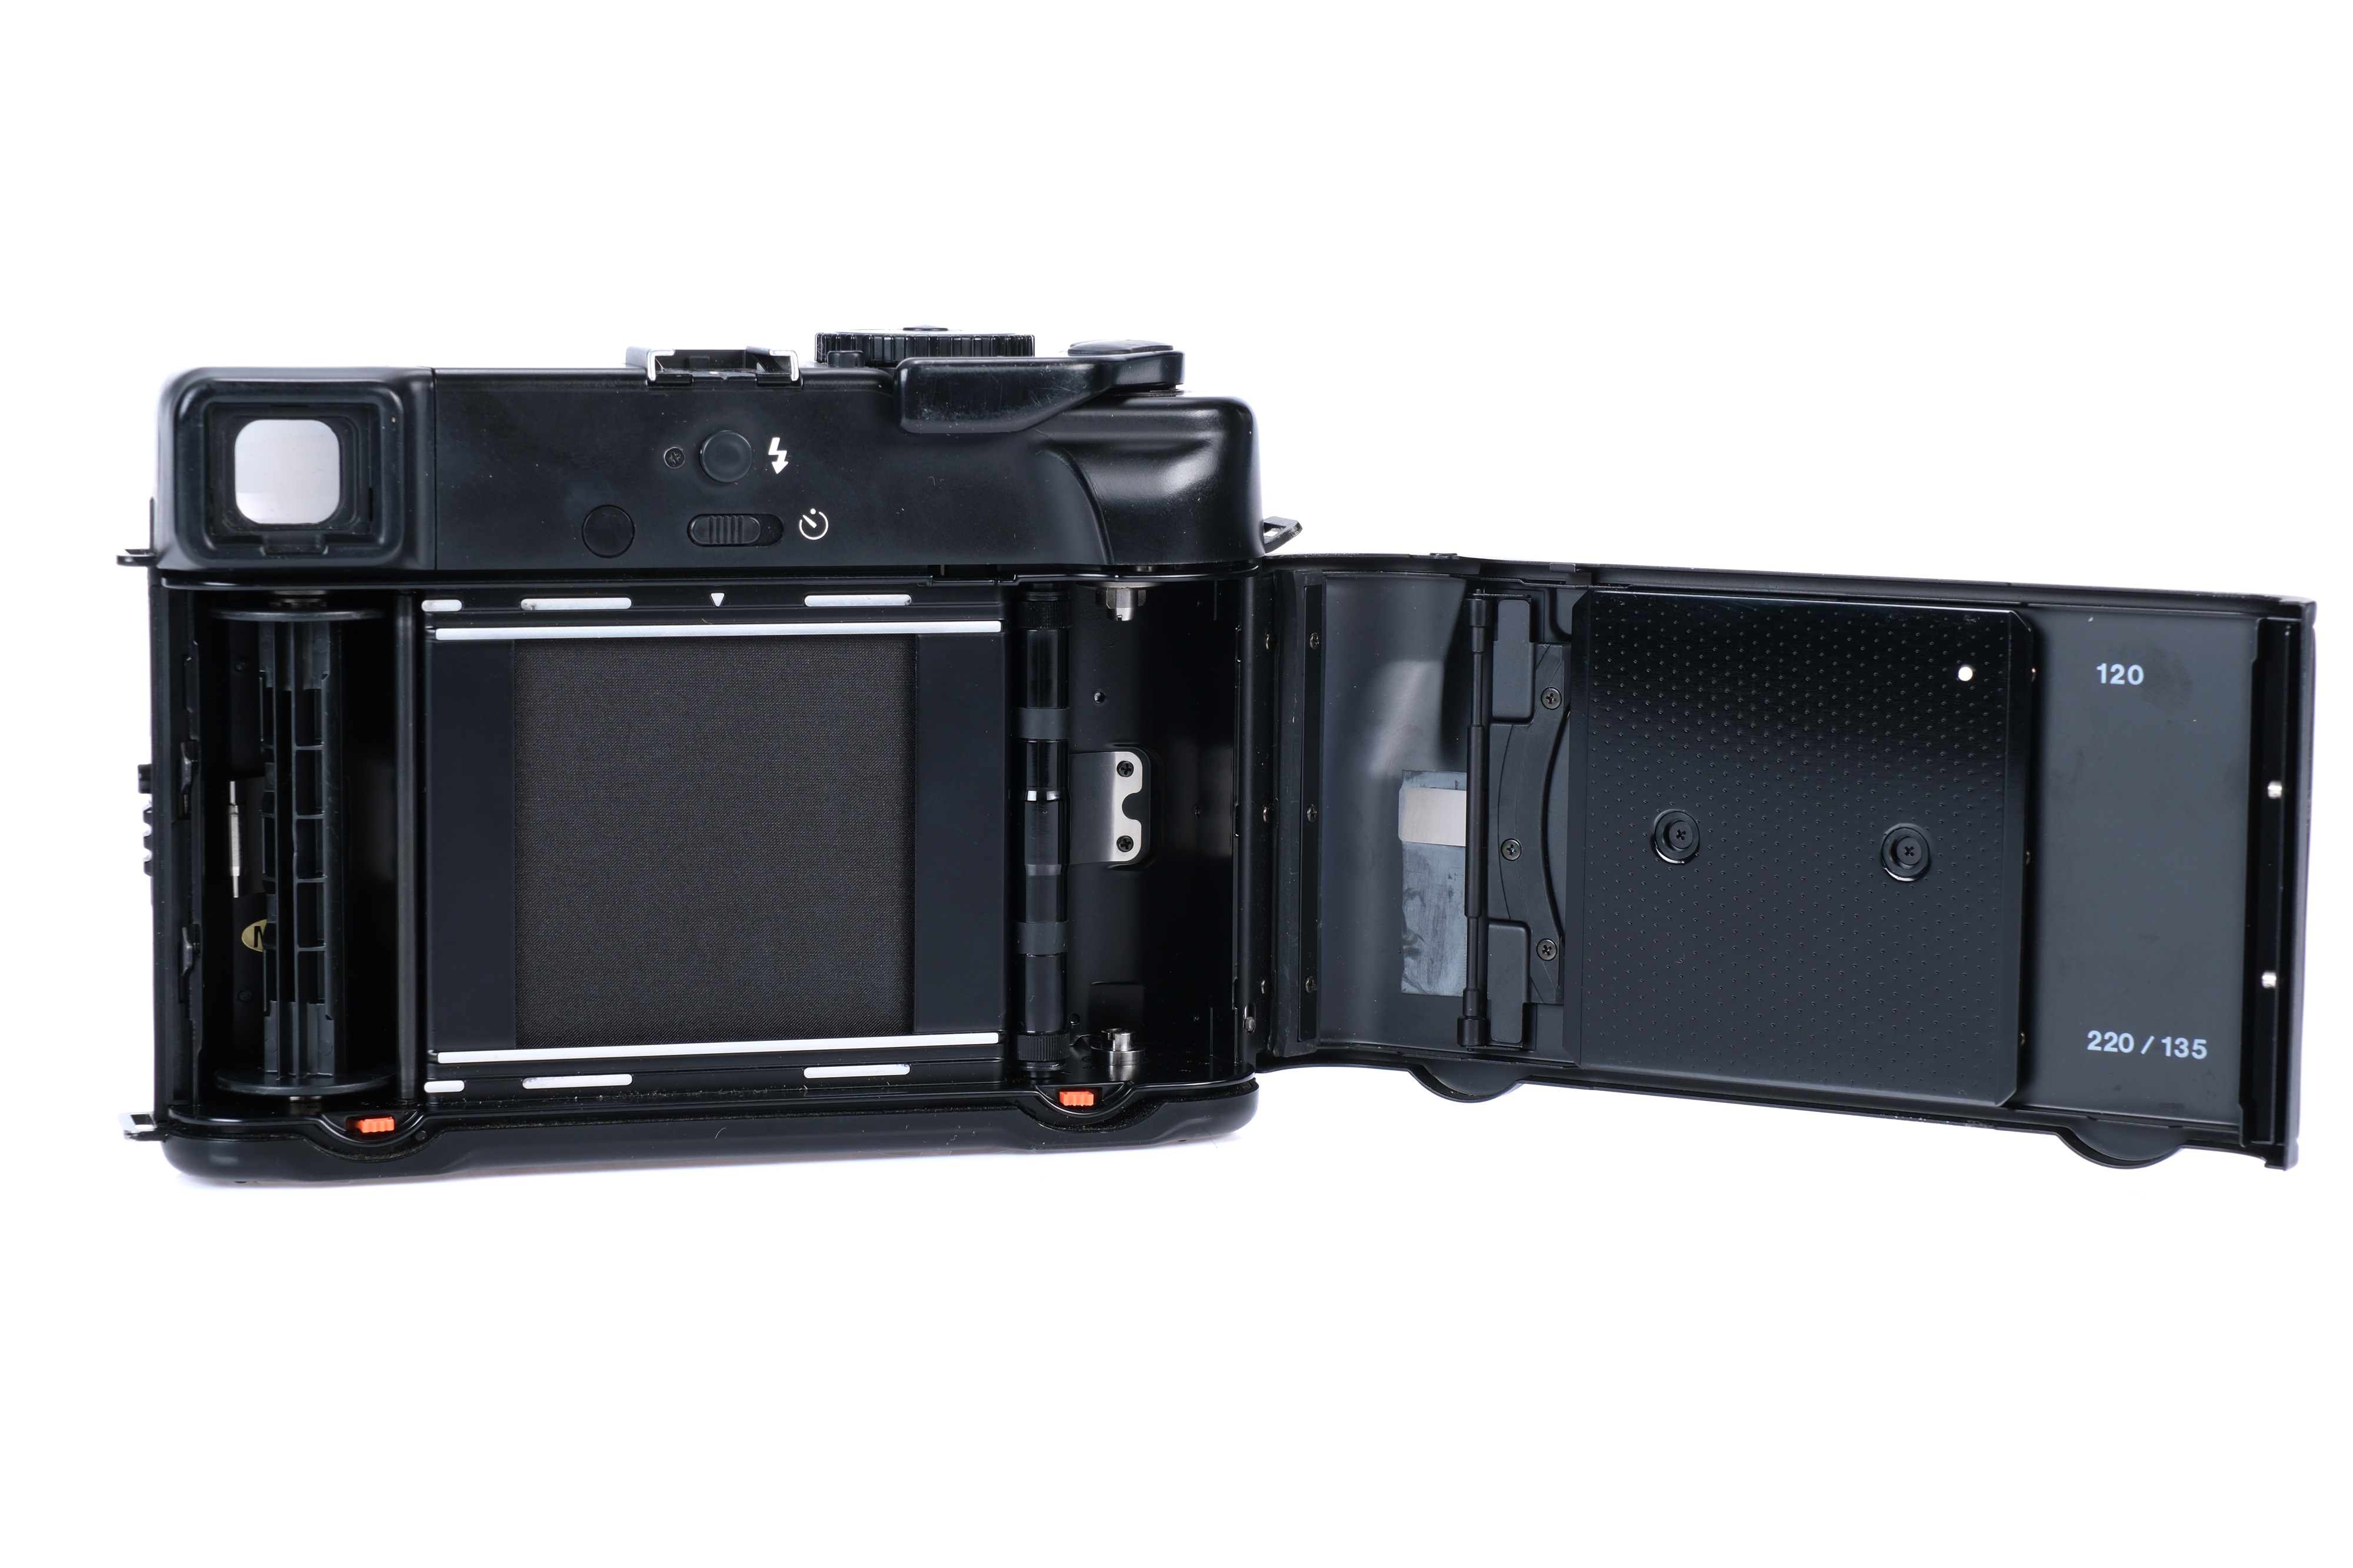 A Mamiya 6 MF Medium Format Rangefinder Camera Outfit, - Image 6 of 8